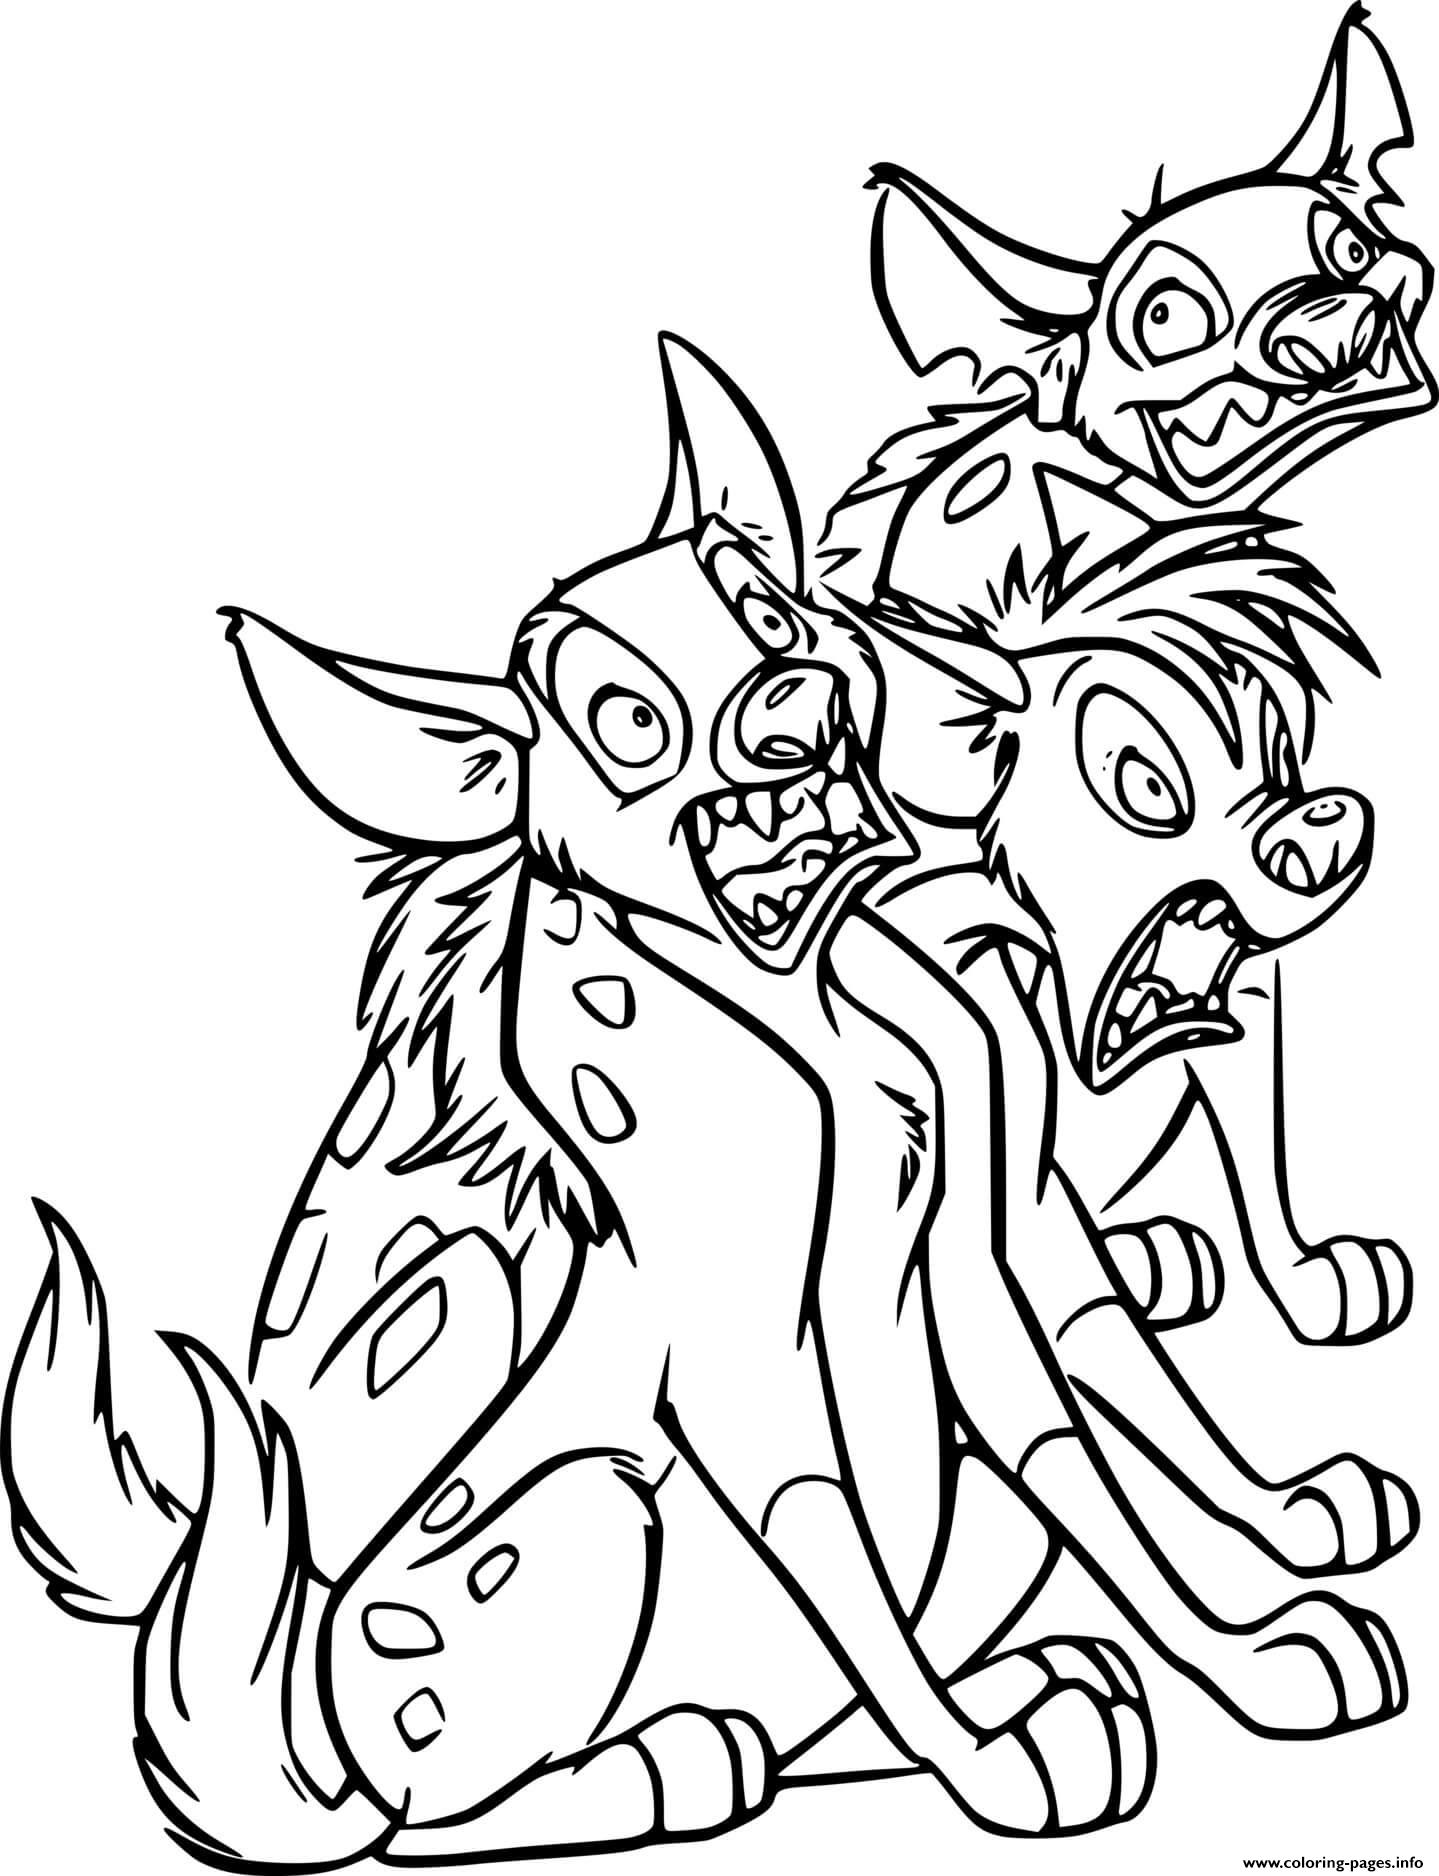 Three Hyenas coloring